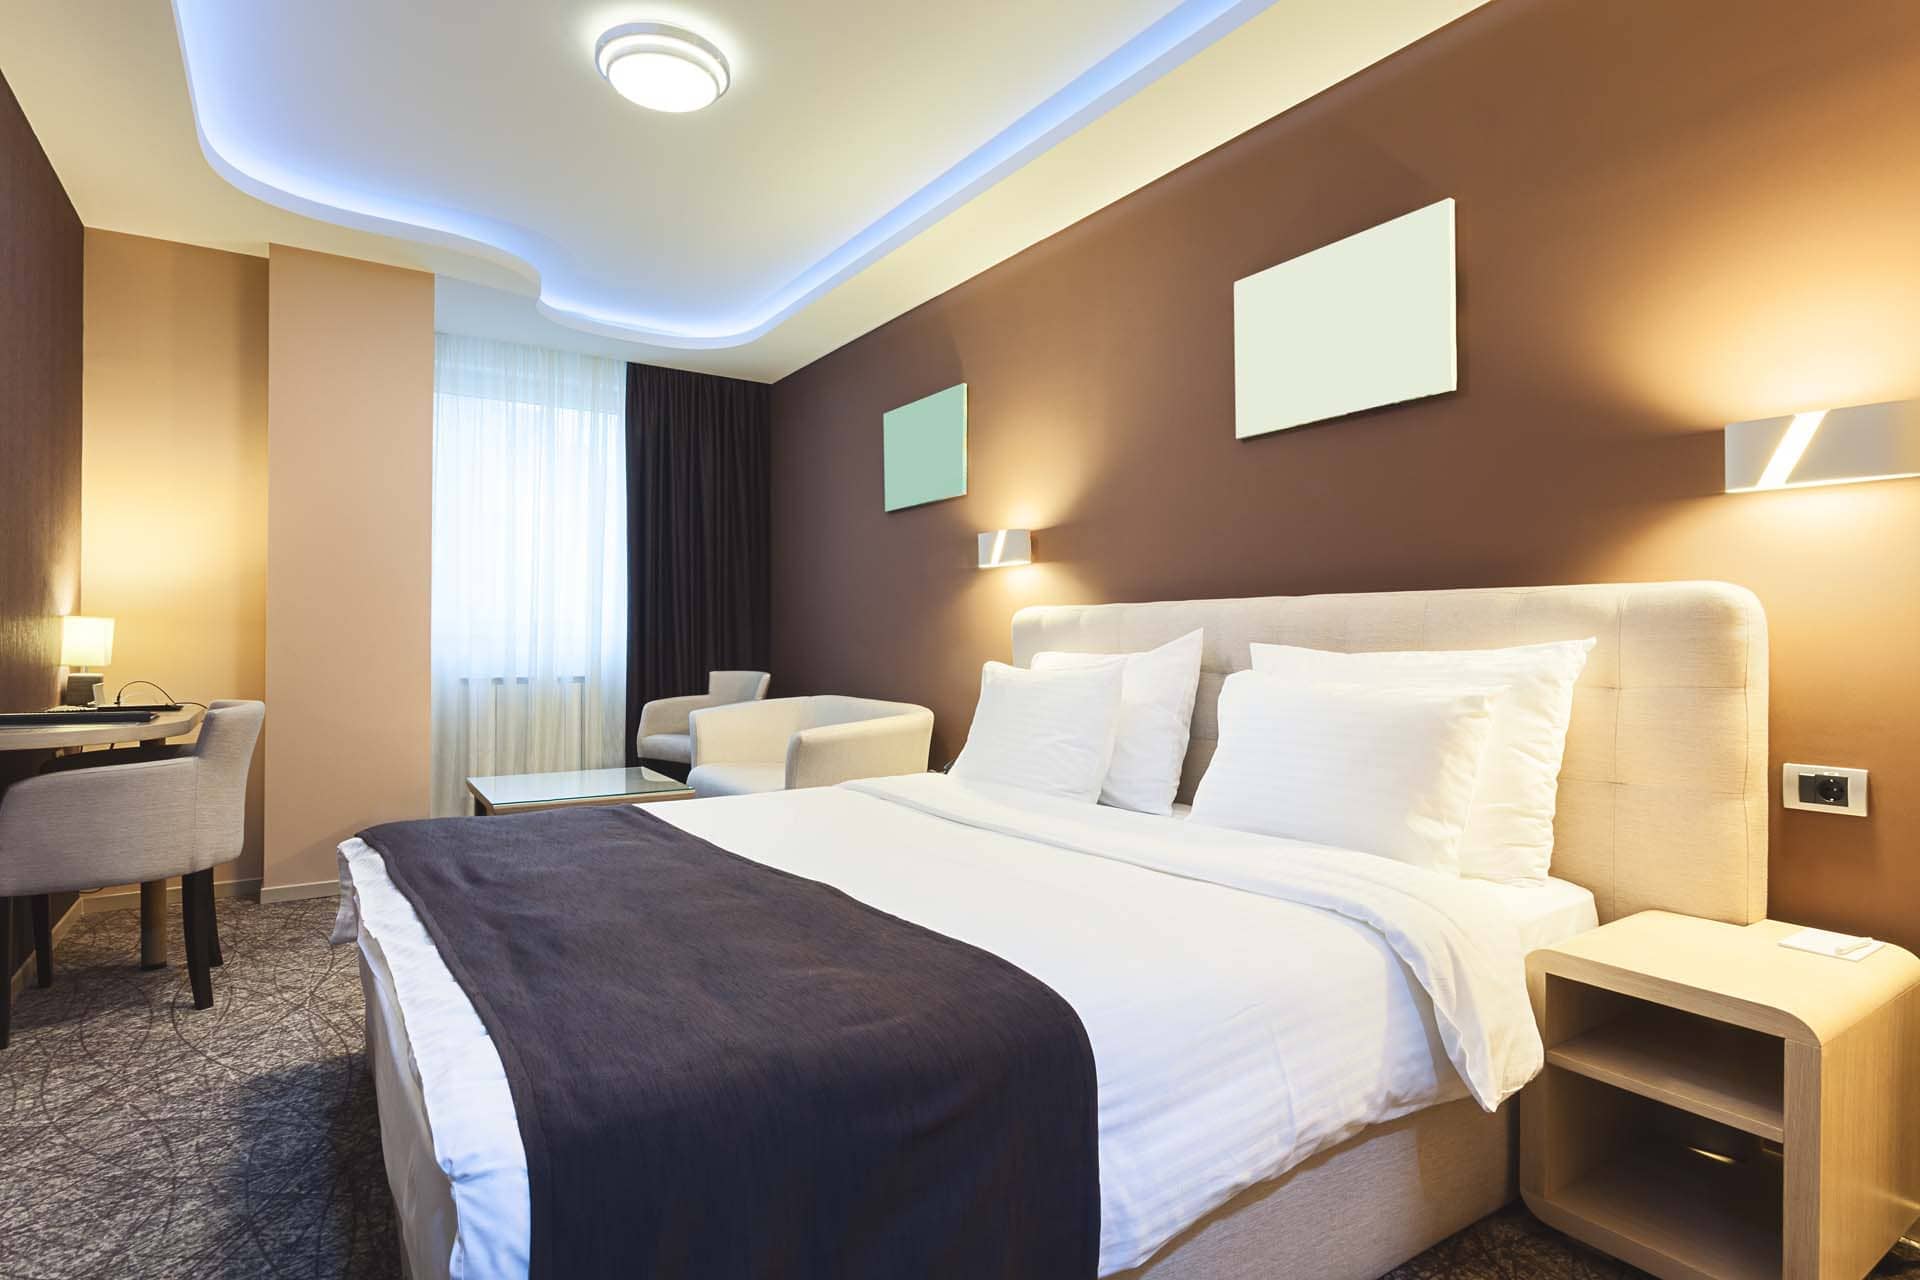 Hotelzimmer mit Smart Home Lösung von Loxone